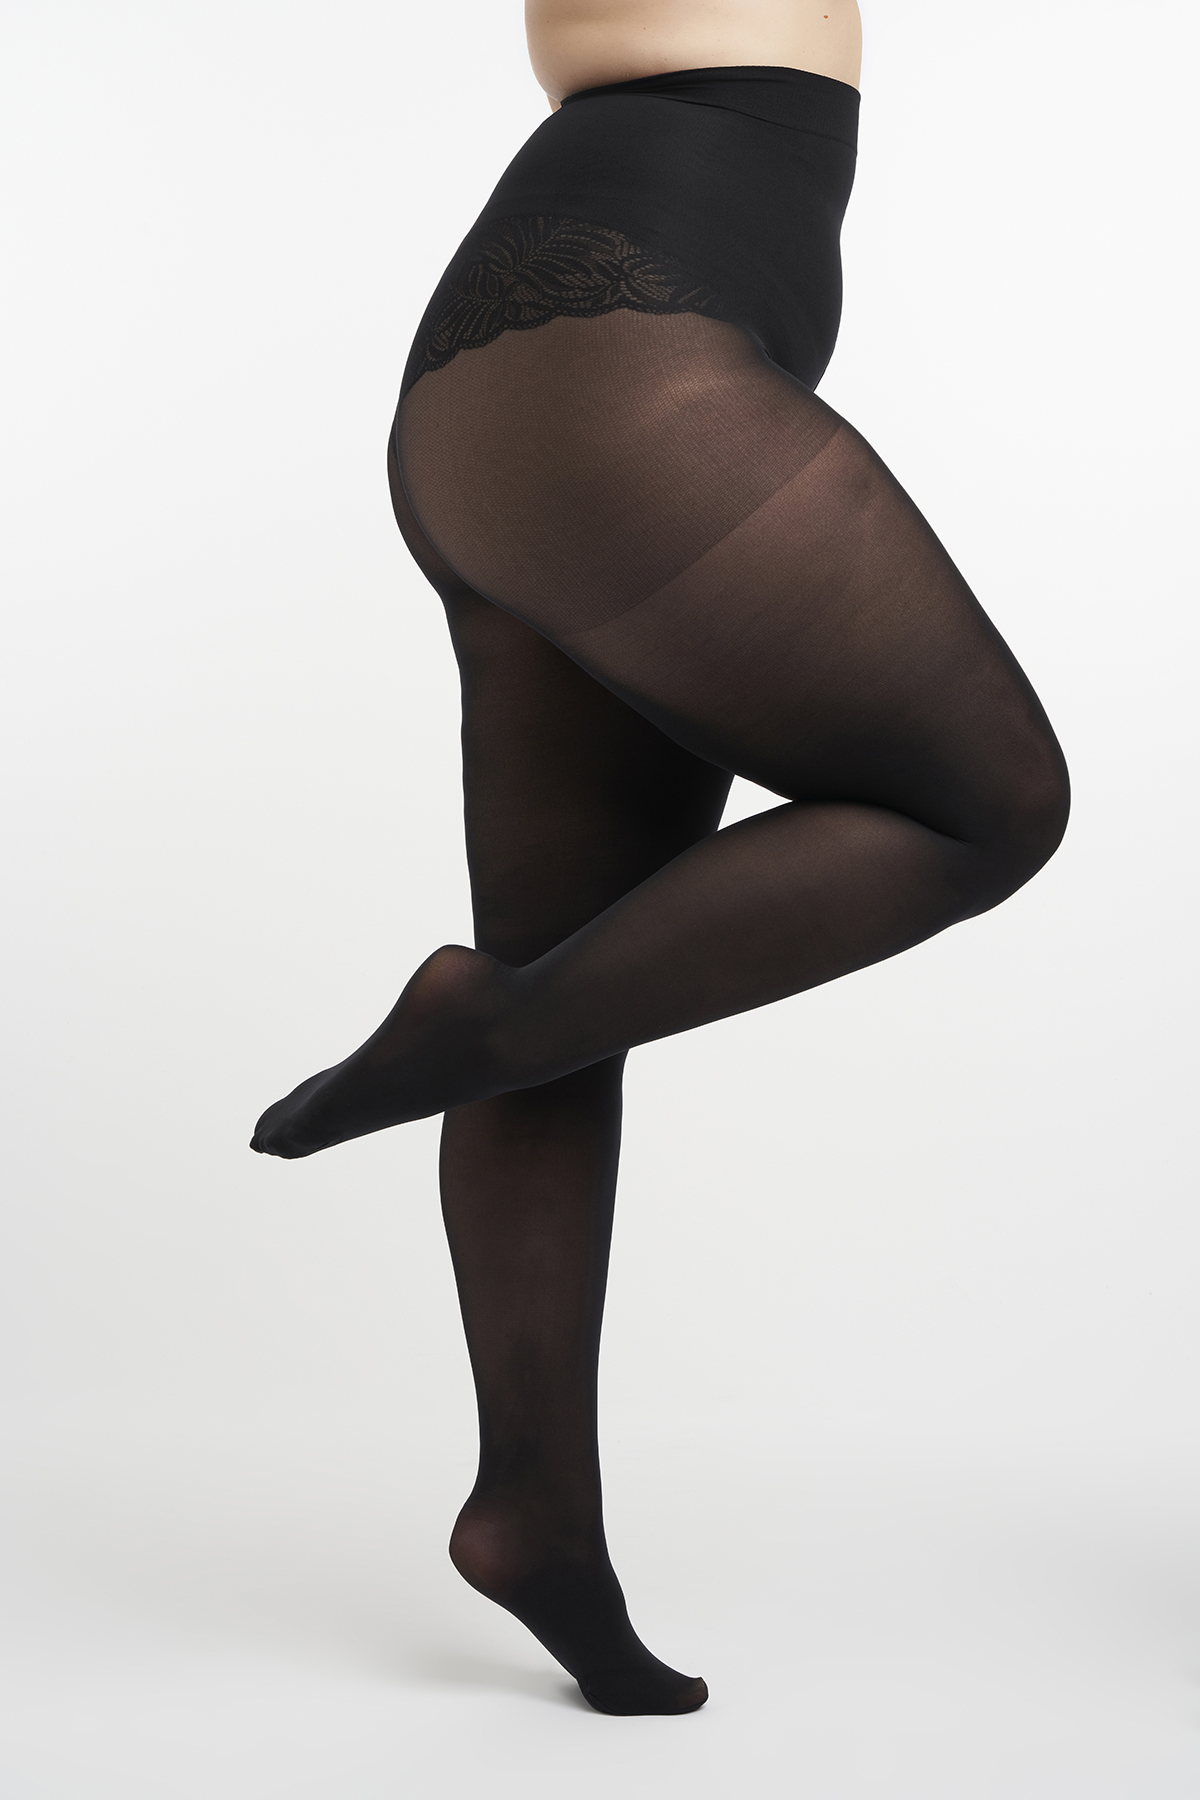 Uitpakken overloop eeuw Dames 3D Super stretch panty 40DEN - 2 Pack Zwart bij MS Mode®